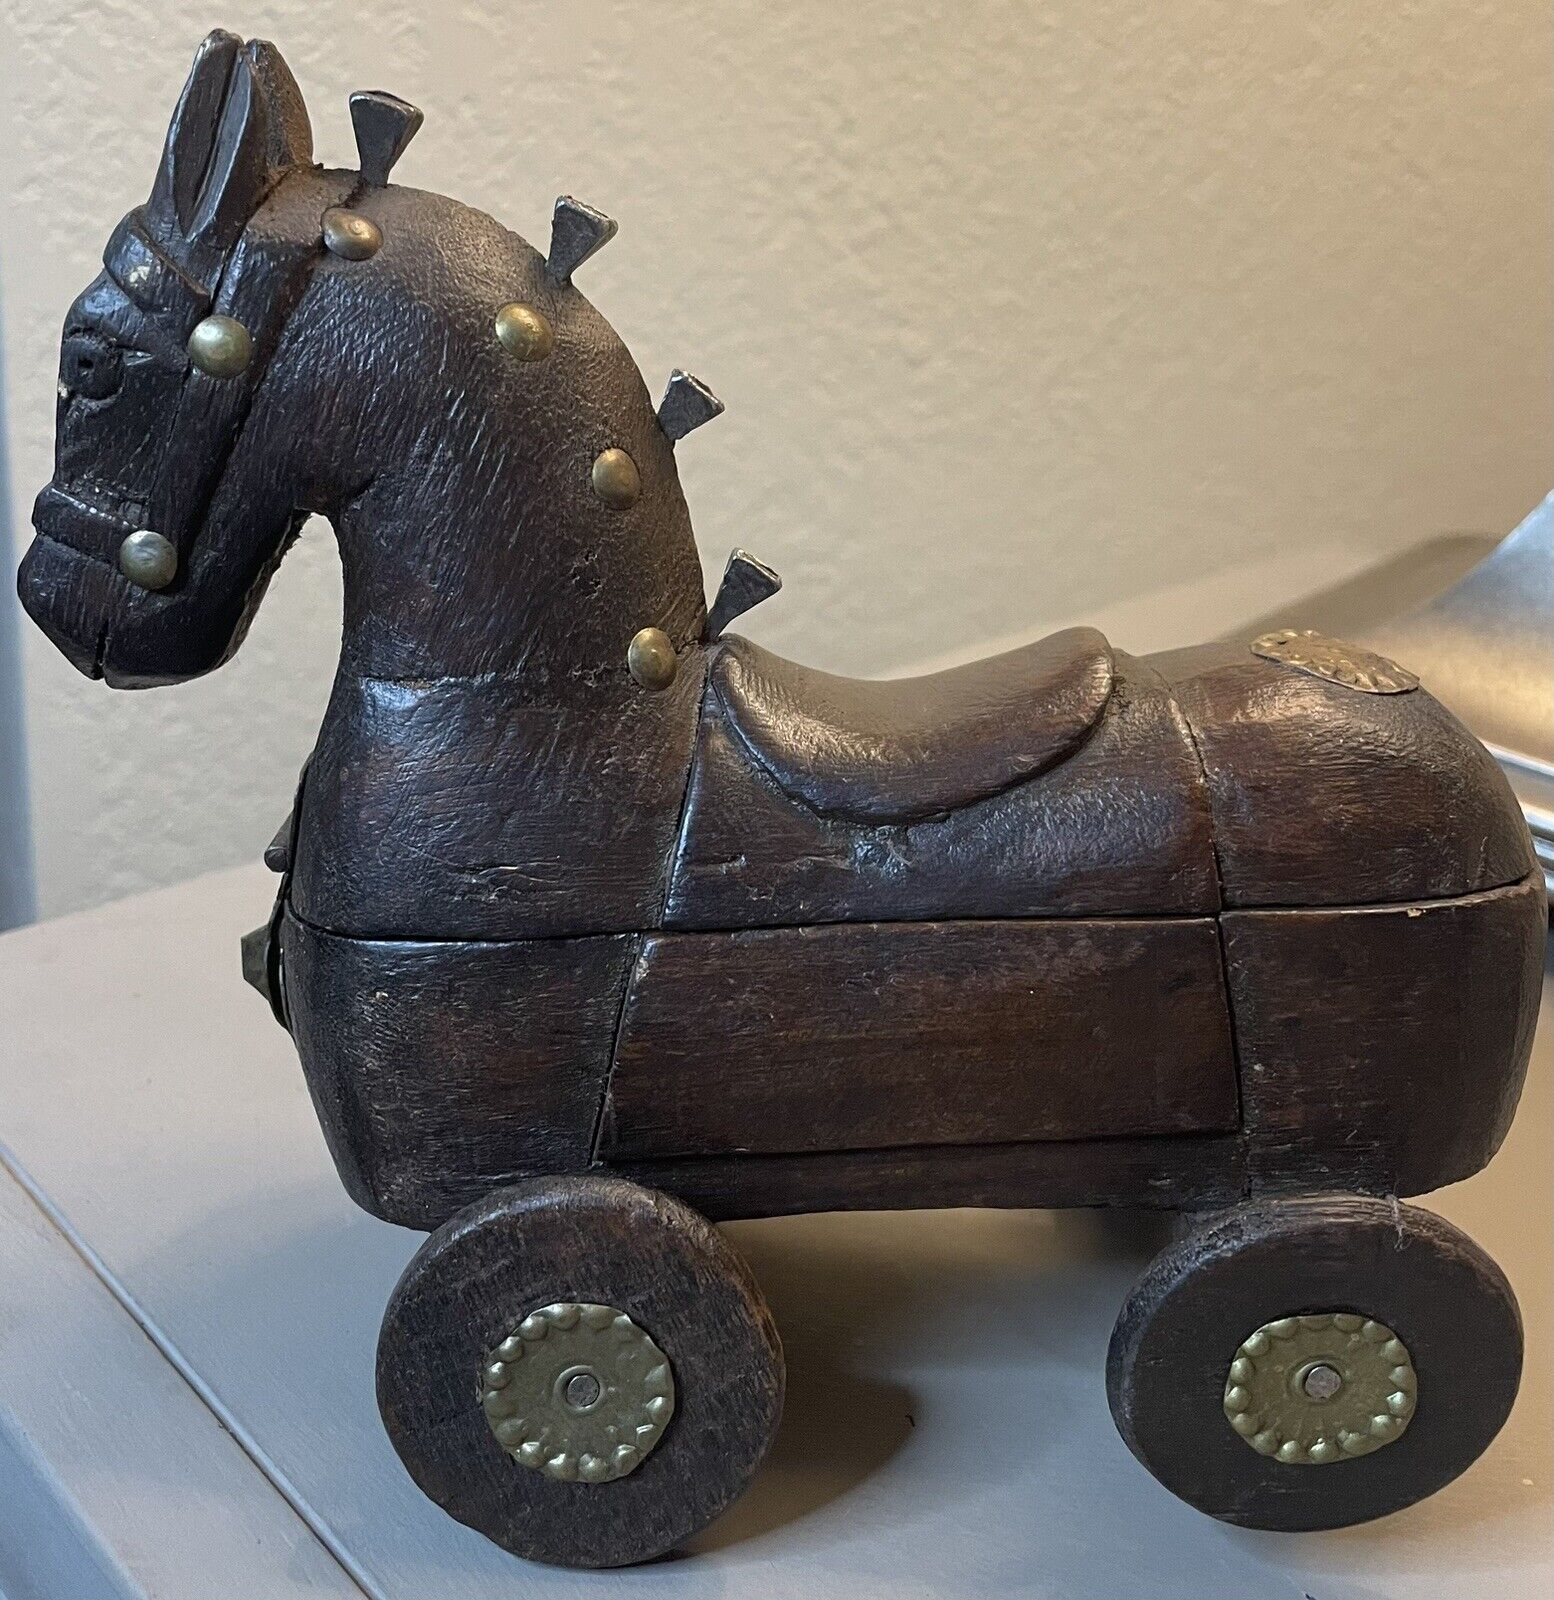 Antique TROJAN HORSE SCULPTURE ARTISAN Folk Art WOODEN BOX 6”X6” - Missing Wheel